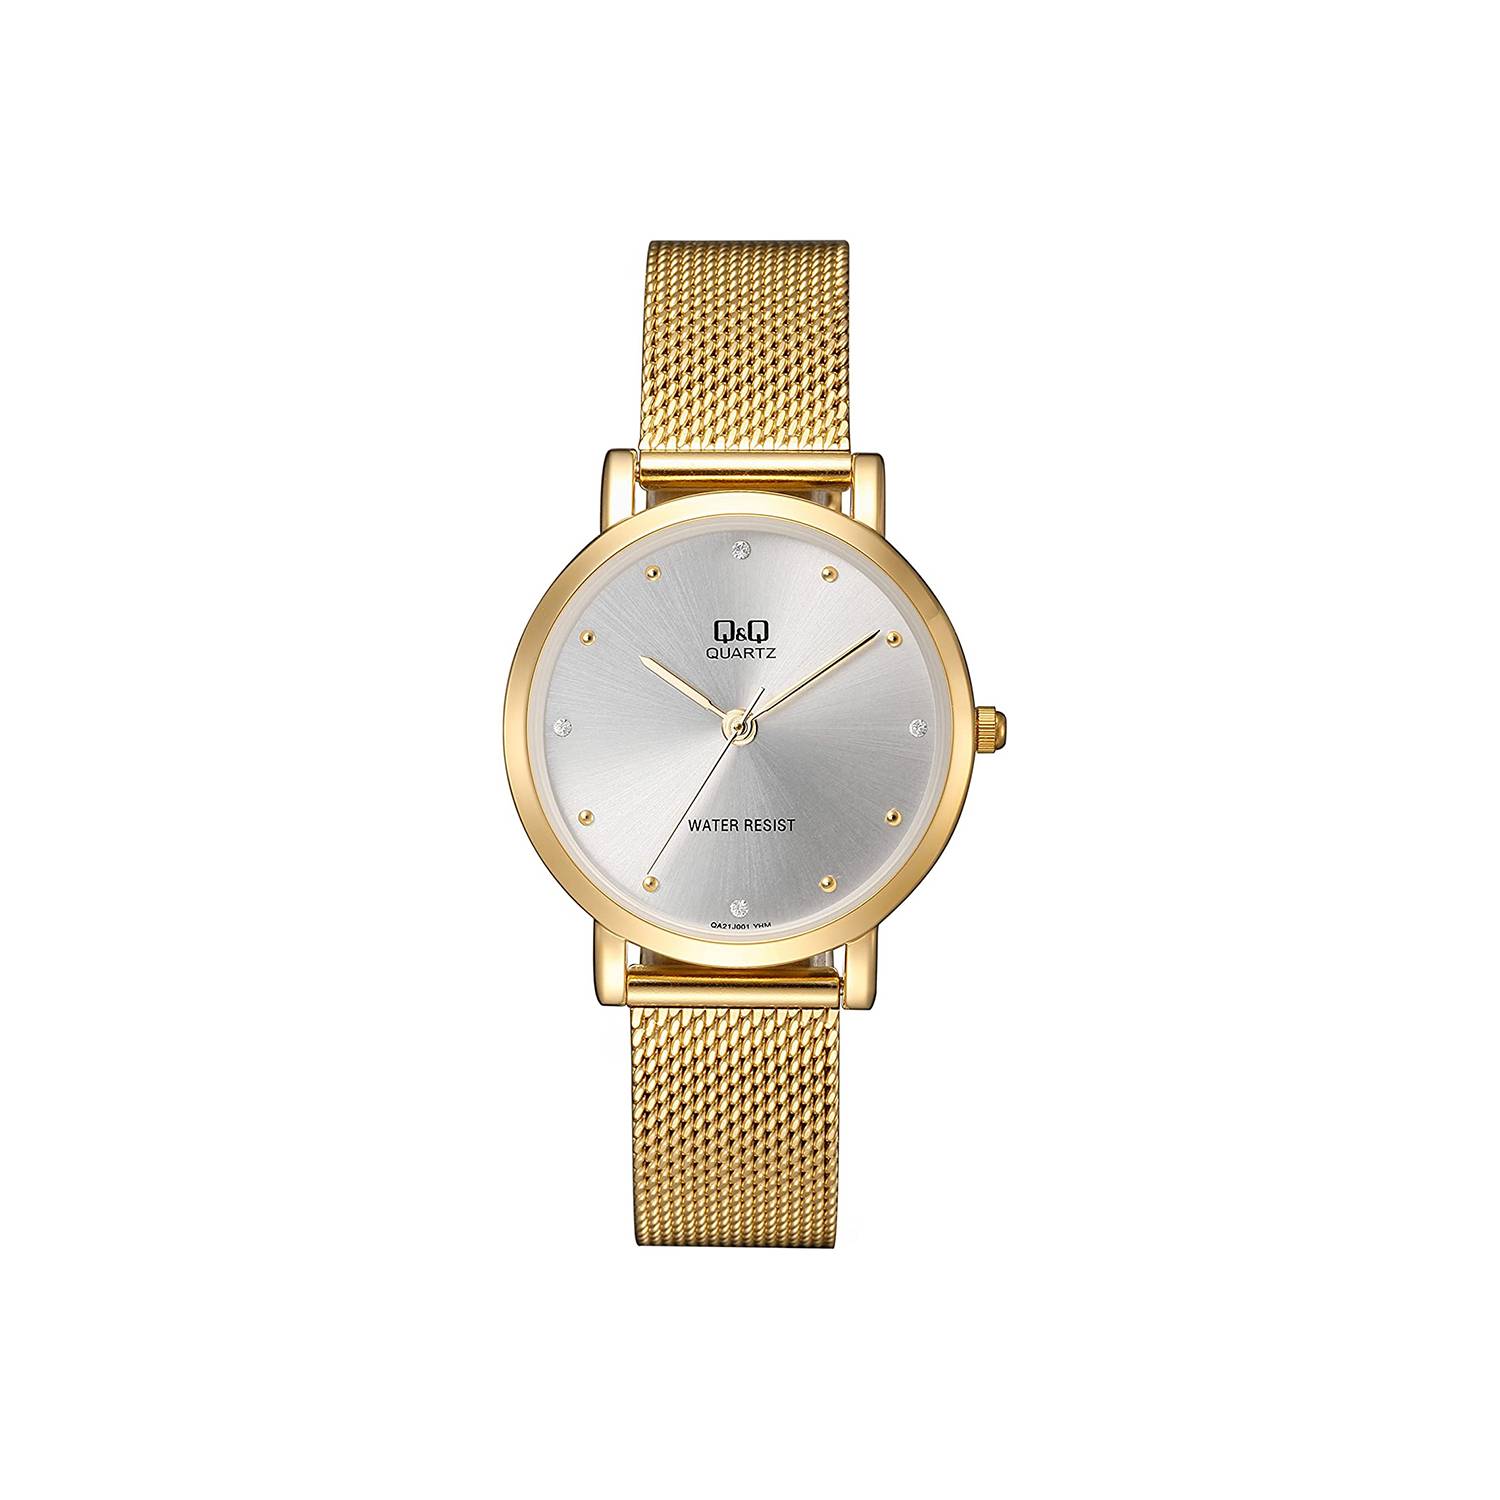 Reloj Q&Q Mujer Dorado QA21J001Y – Relojes W